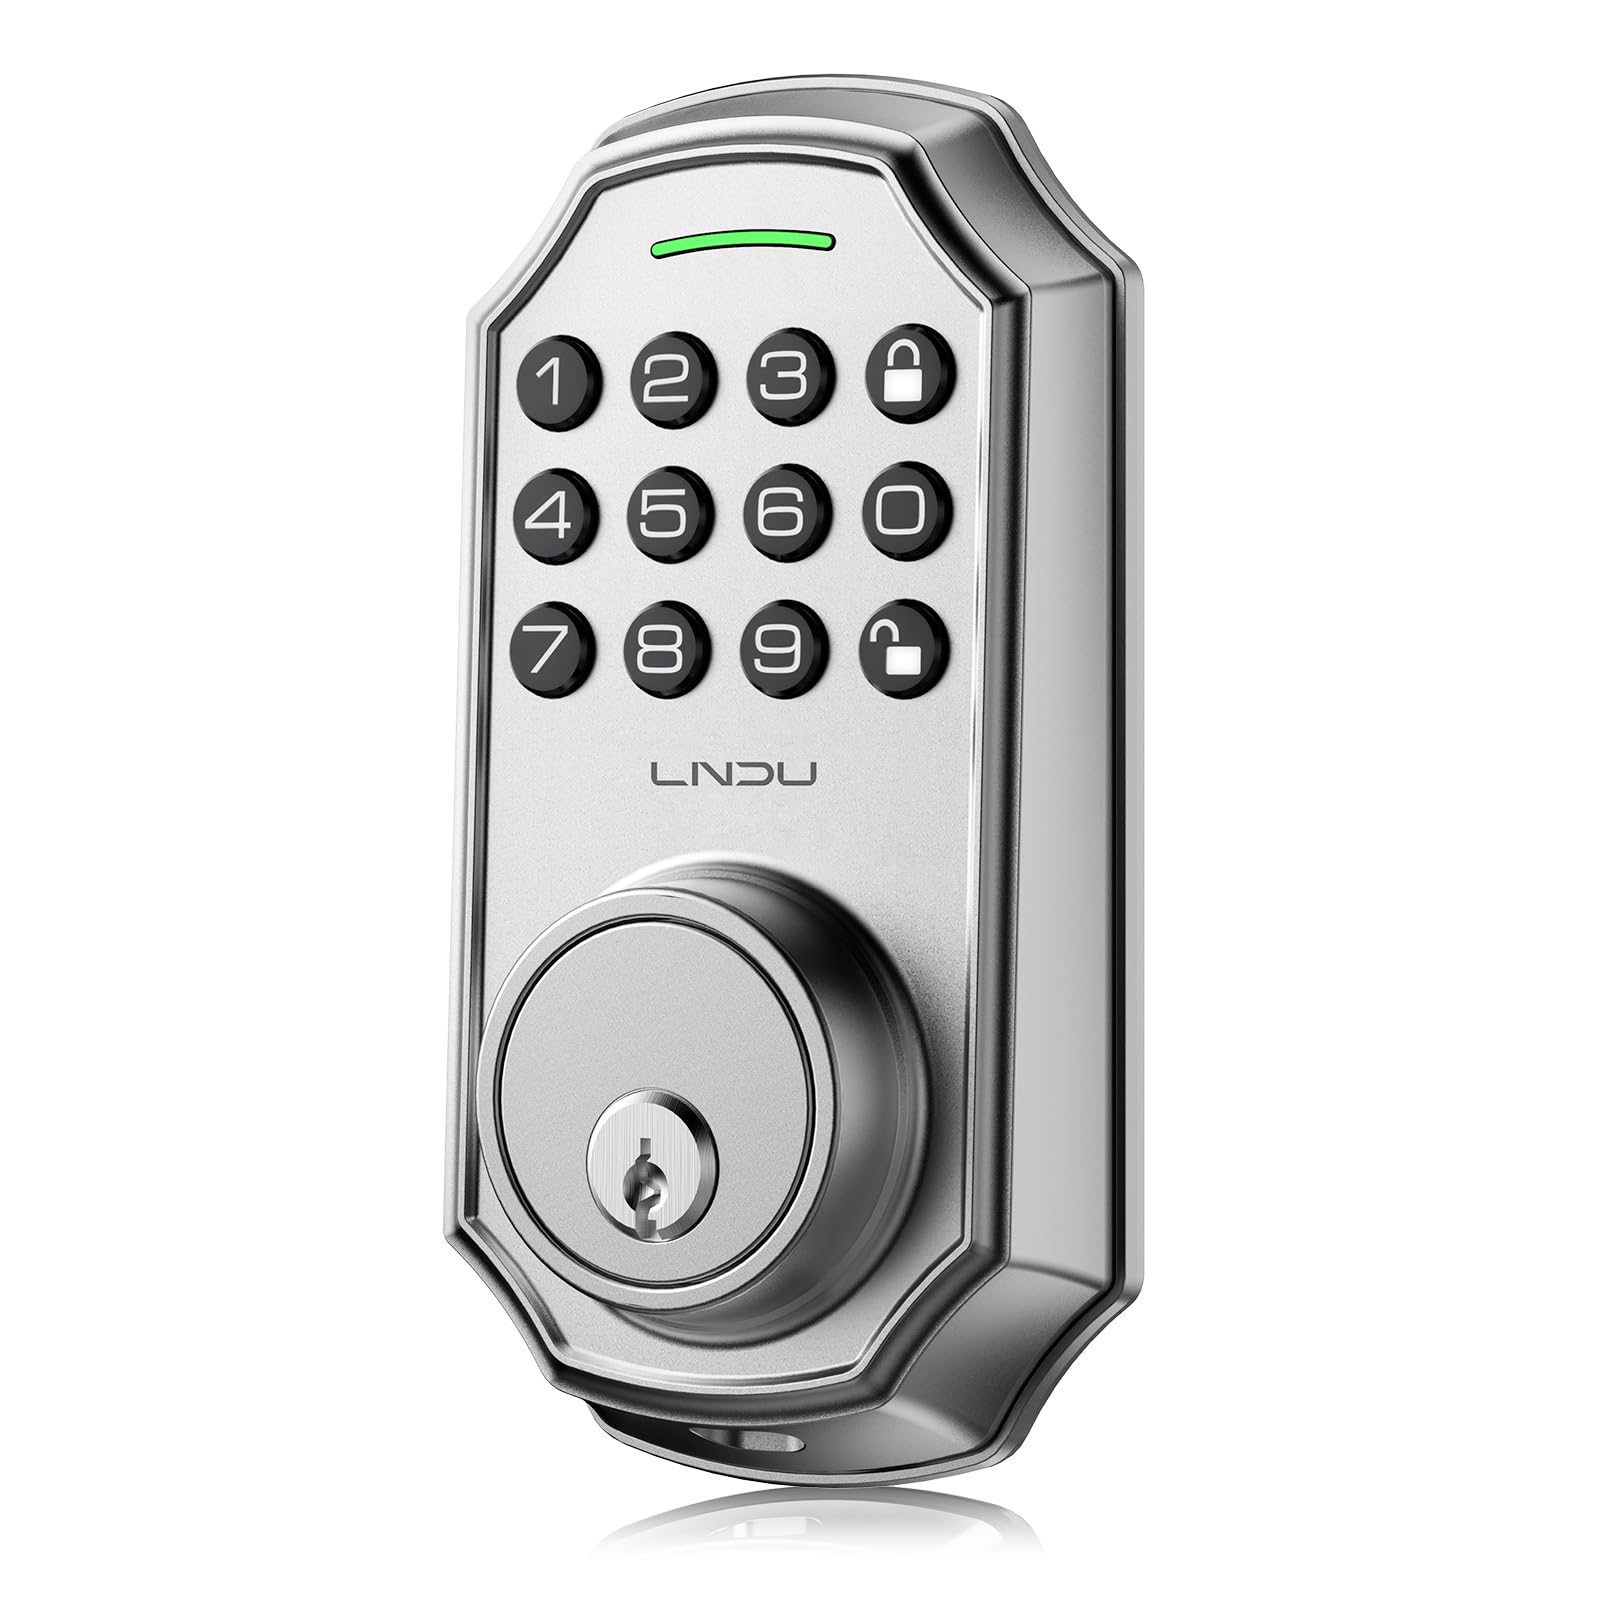 LNDU D180 Keyless Enter Deadbolt Lock Easy to Install